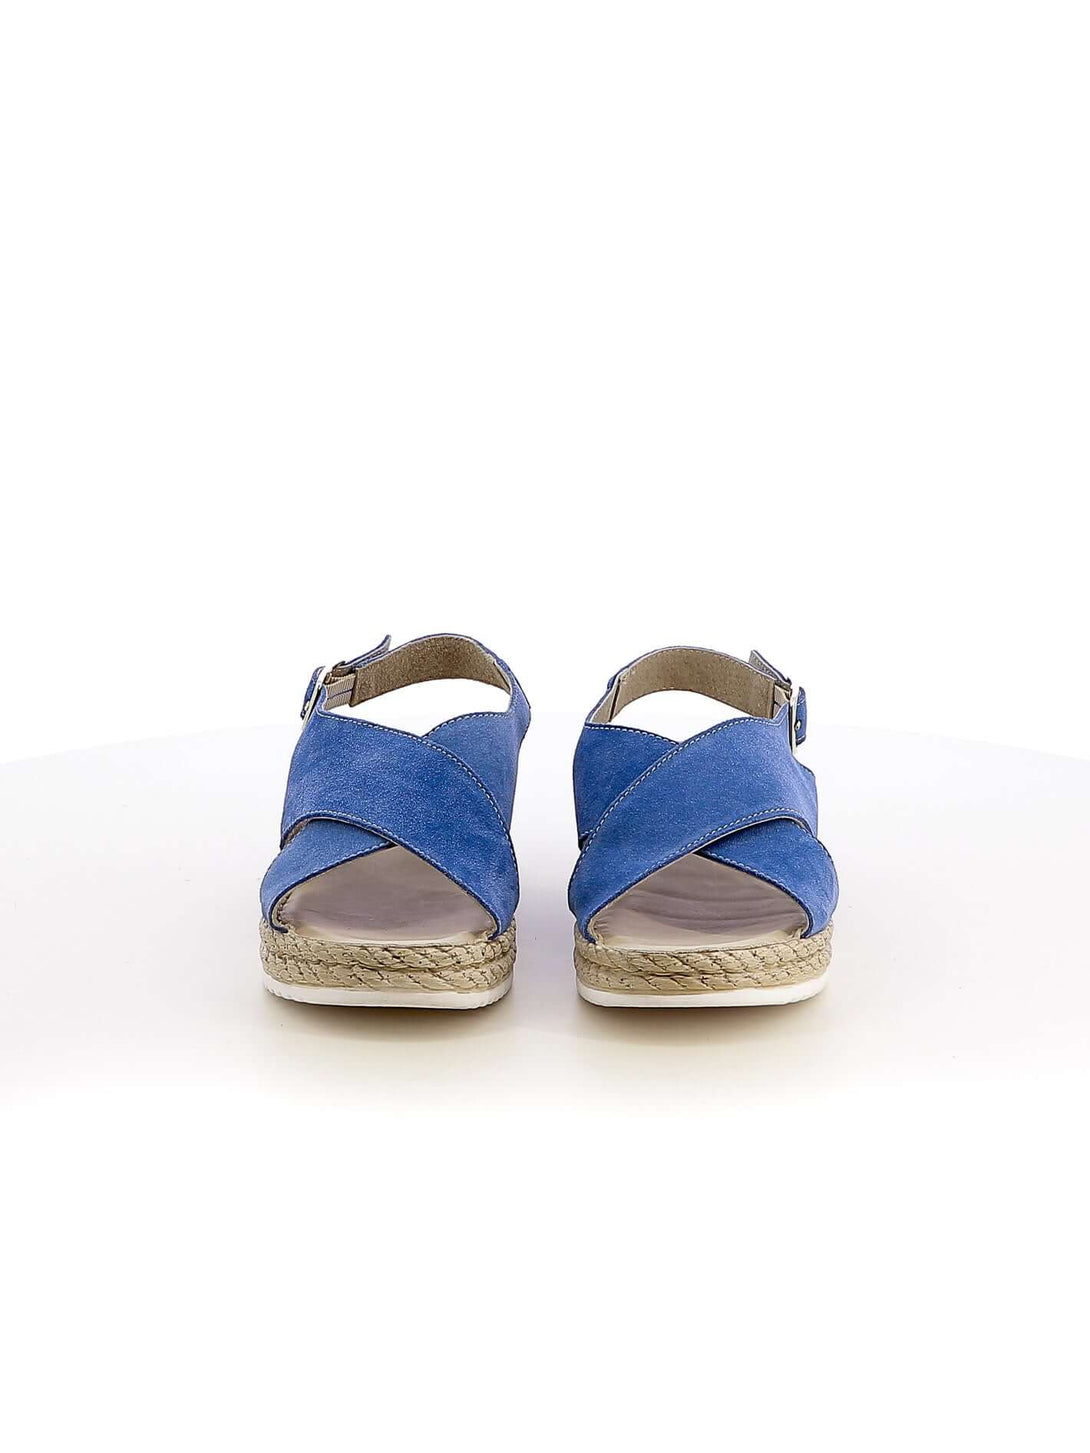 Sandali con cinturino donna RIPOSELLA ALICE W00005 azzurro | Costa Superstore